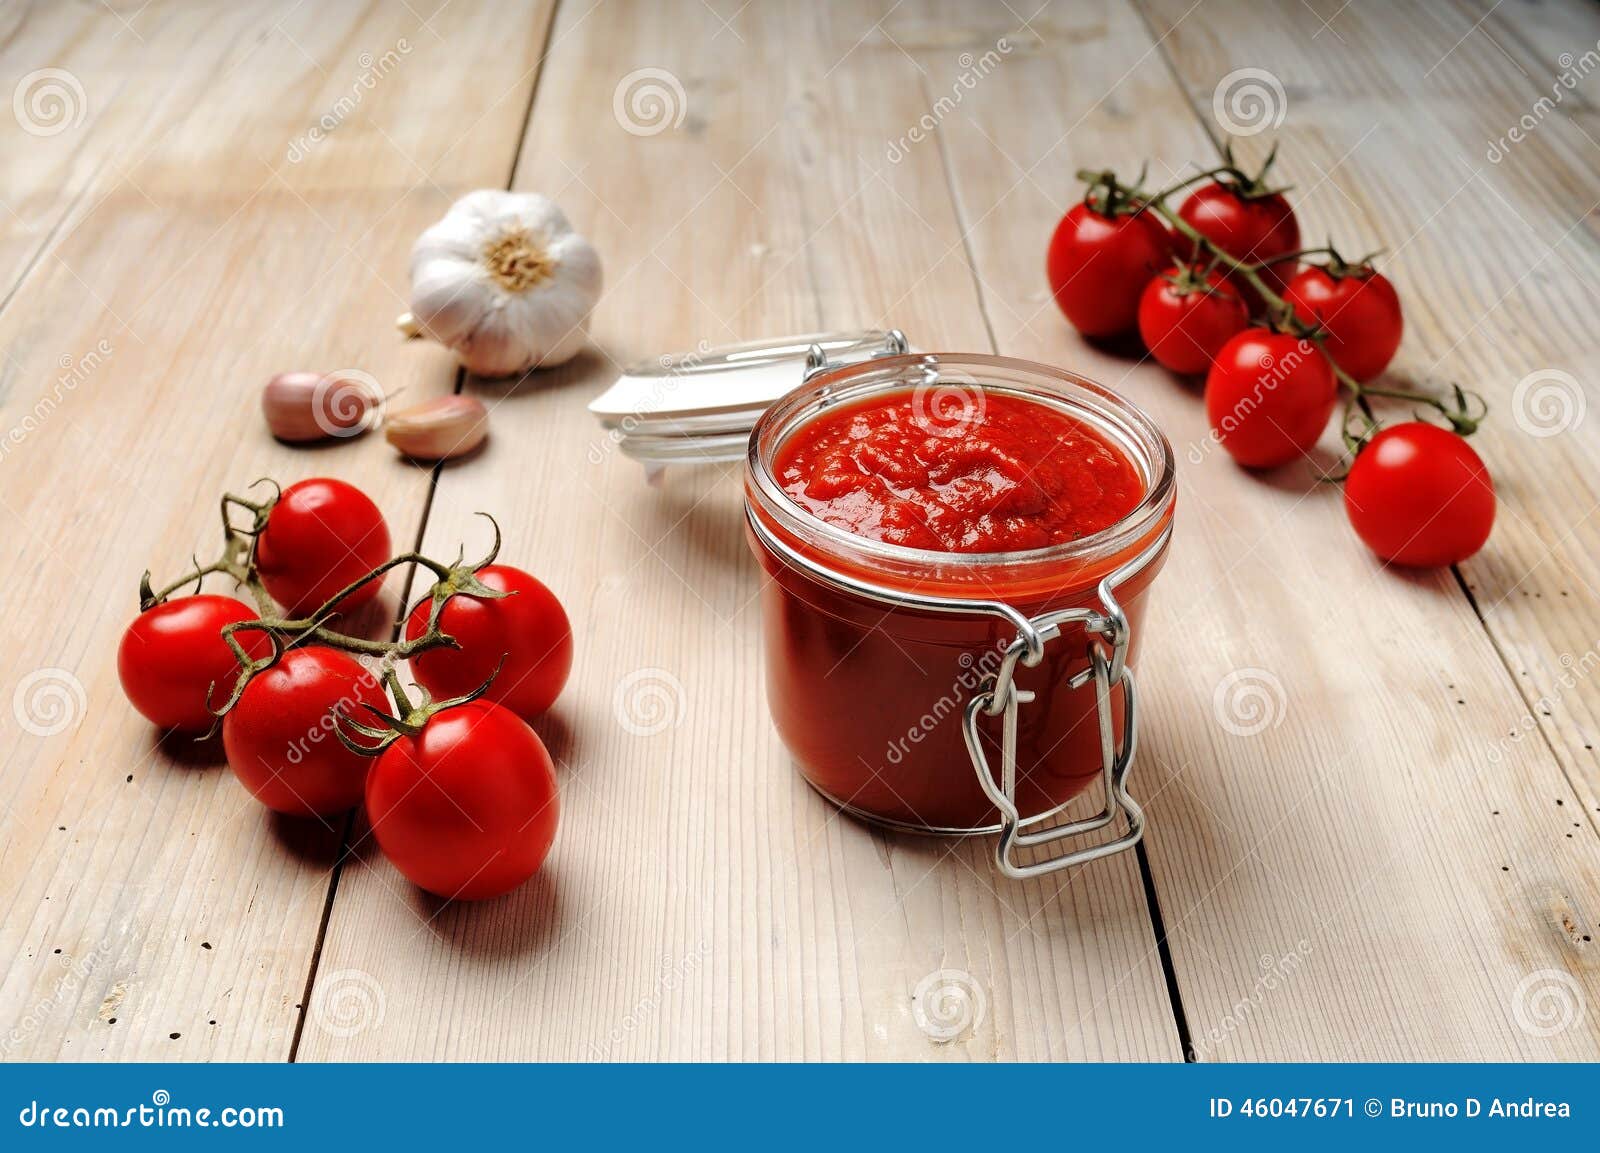 意大利进口怒火西红柿意粉酱190g瓶装 意面沙拉复合调味酱 折扣价-淘宝网